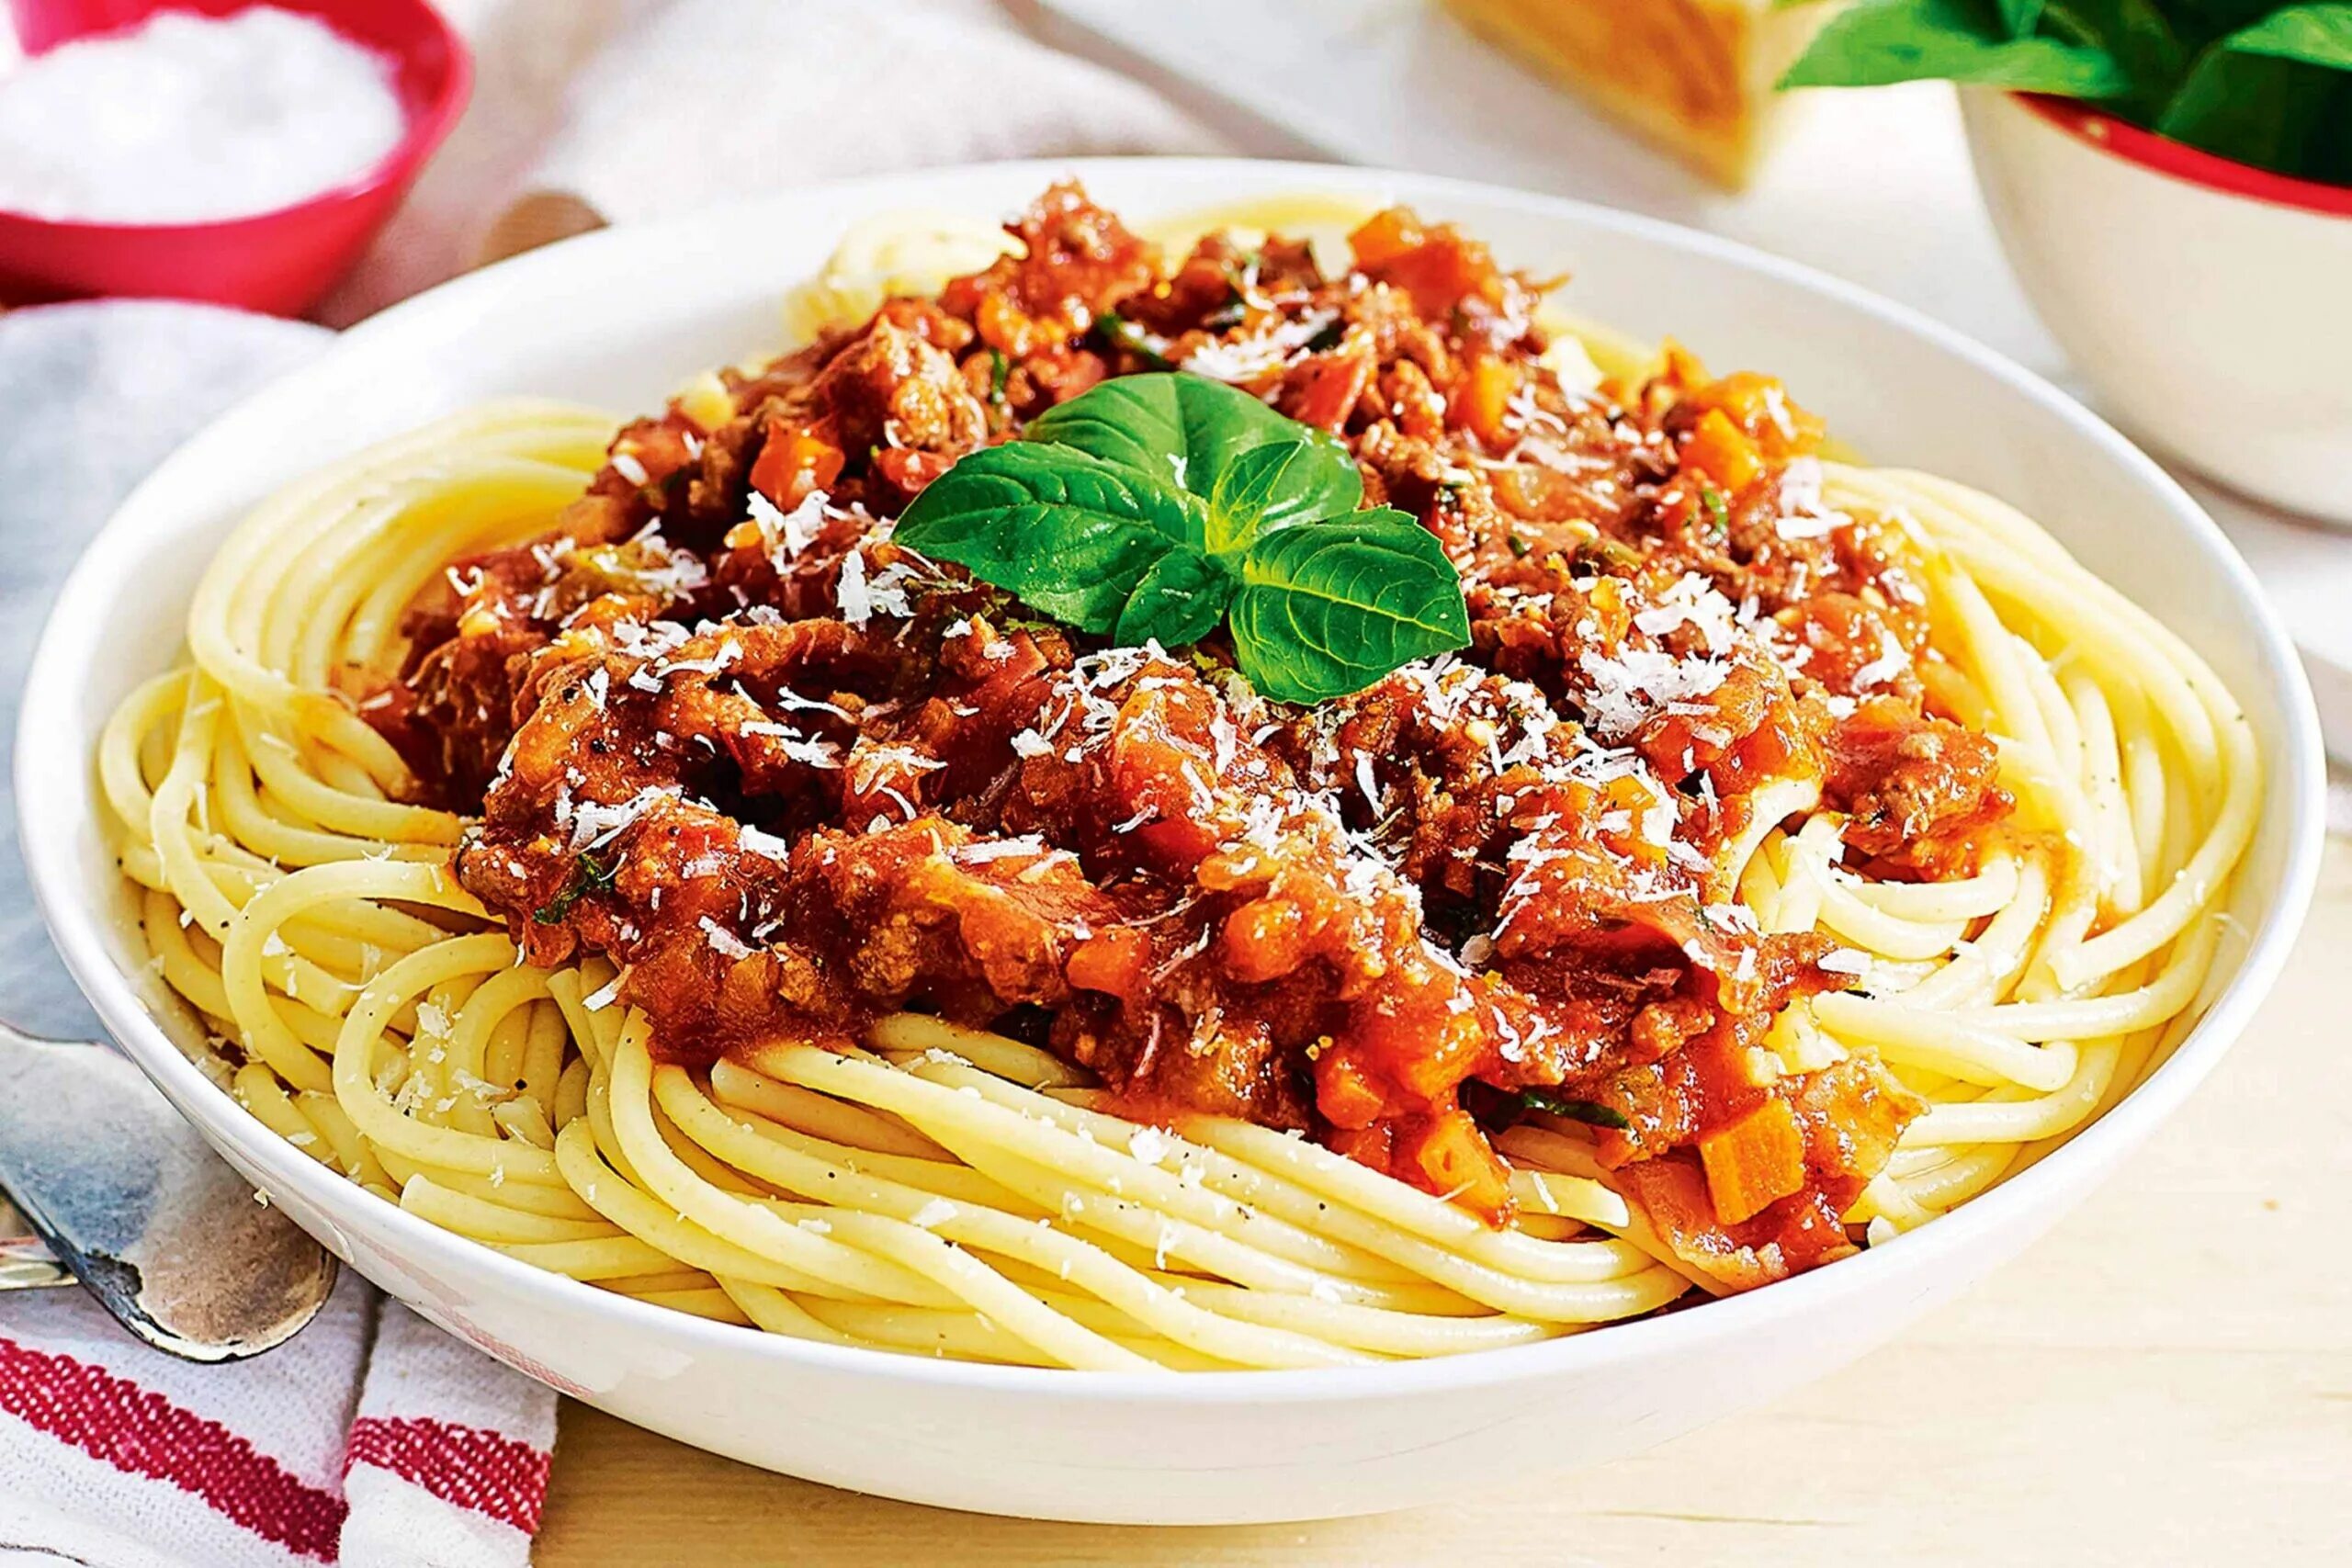 Спагетти с фаршем в соусе болоньезе. Спагетти с соусом Болонез. Мафальдине болоньезе. Болоньезе паста болоньезе. Итальянская паста болоньезе.